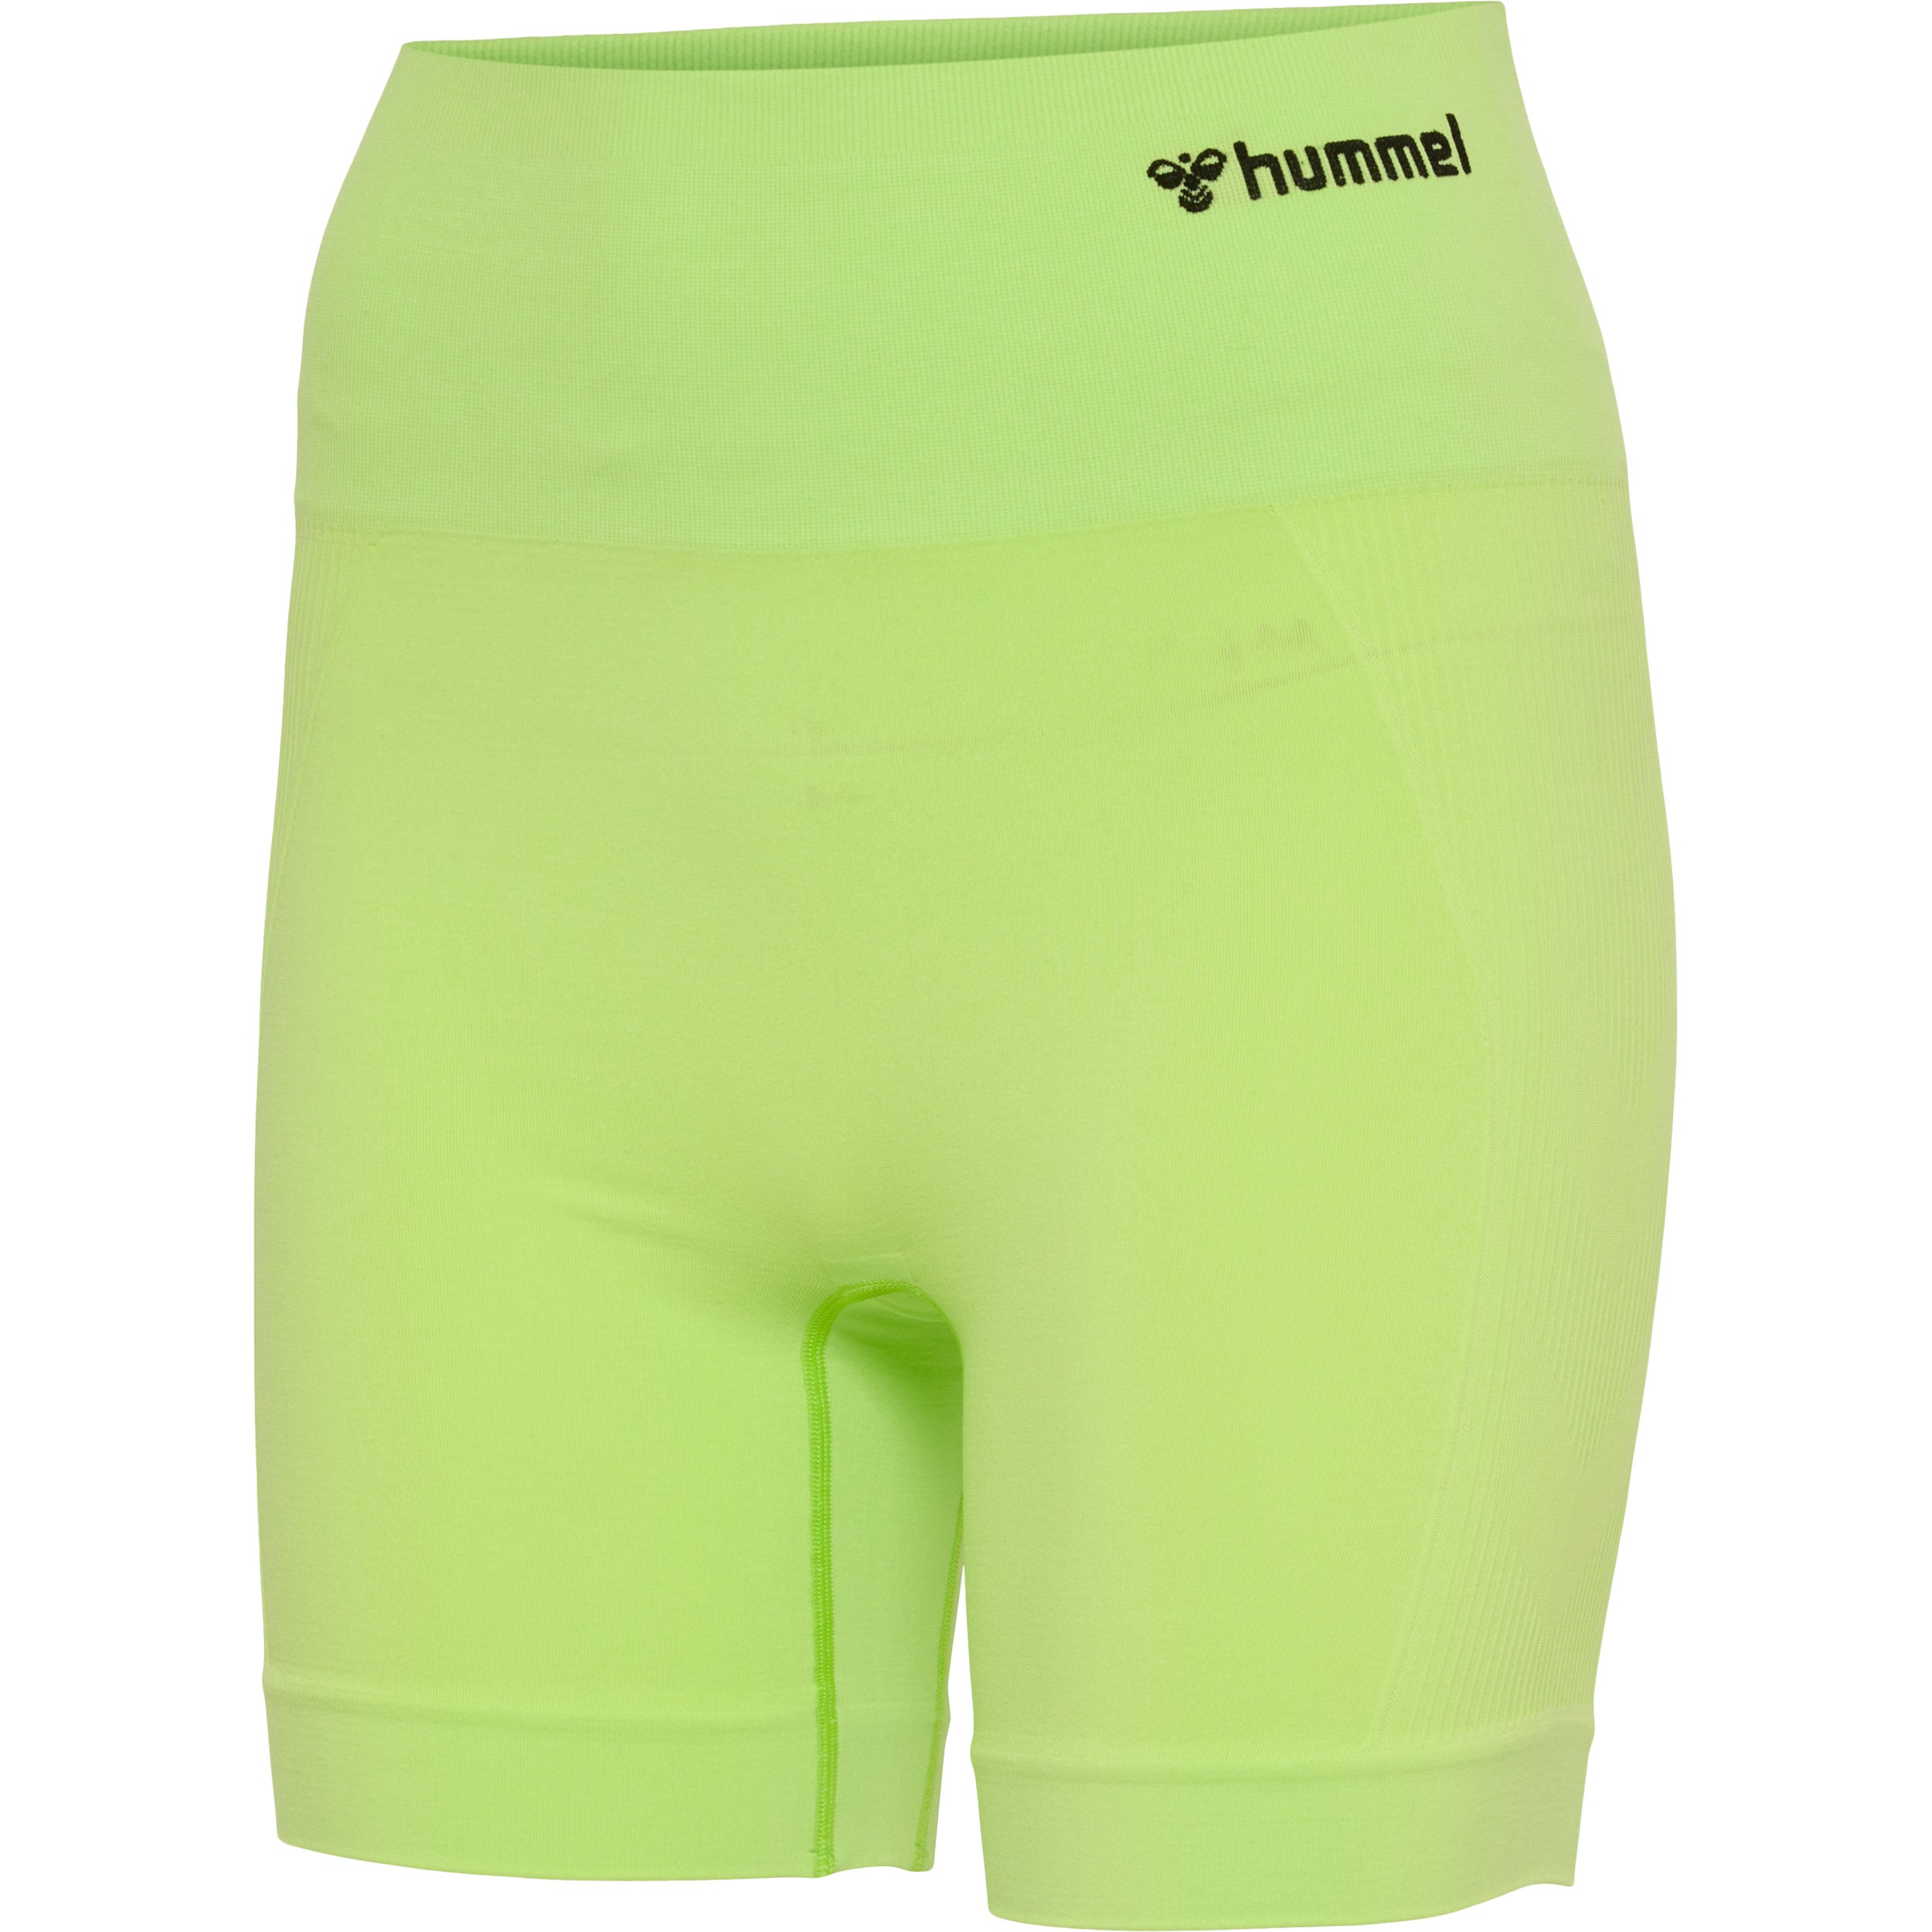 Brug Hummel TIF Seamless Shorts  -  Sharp Green til en forbedret oplevelse